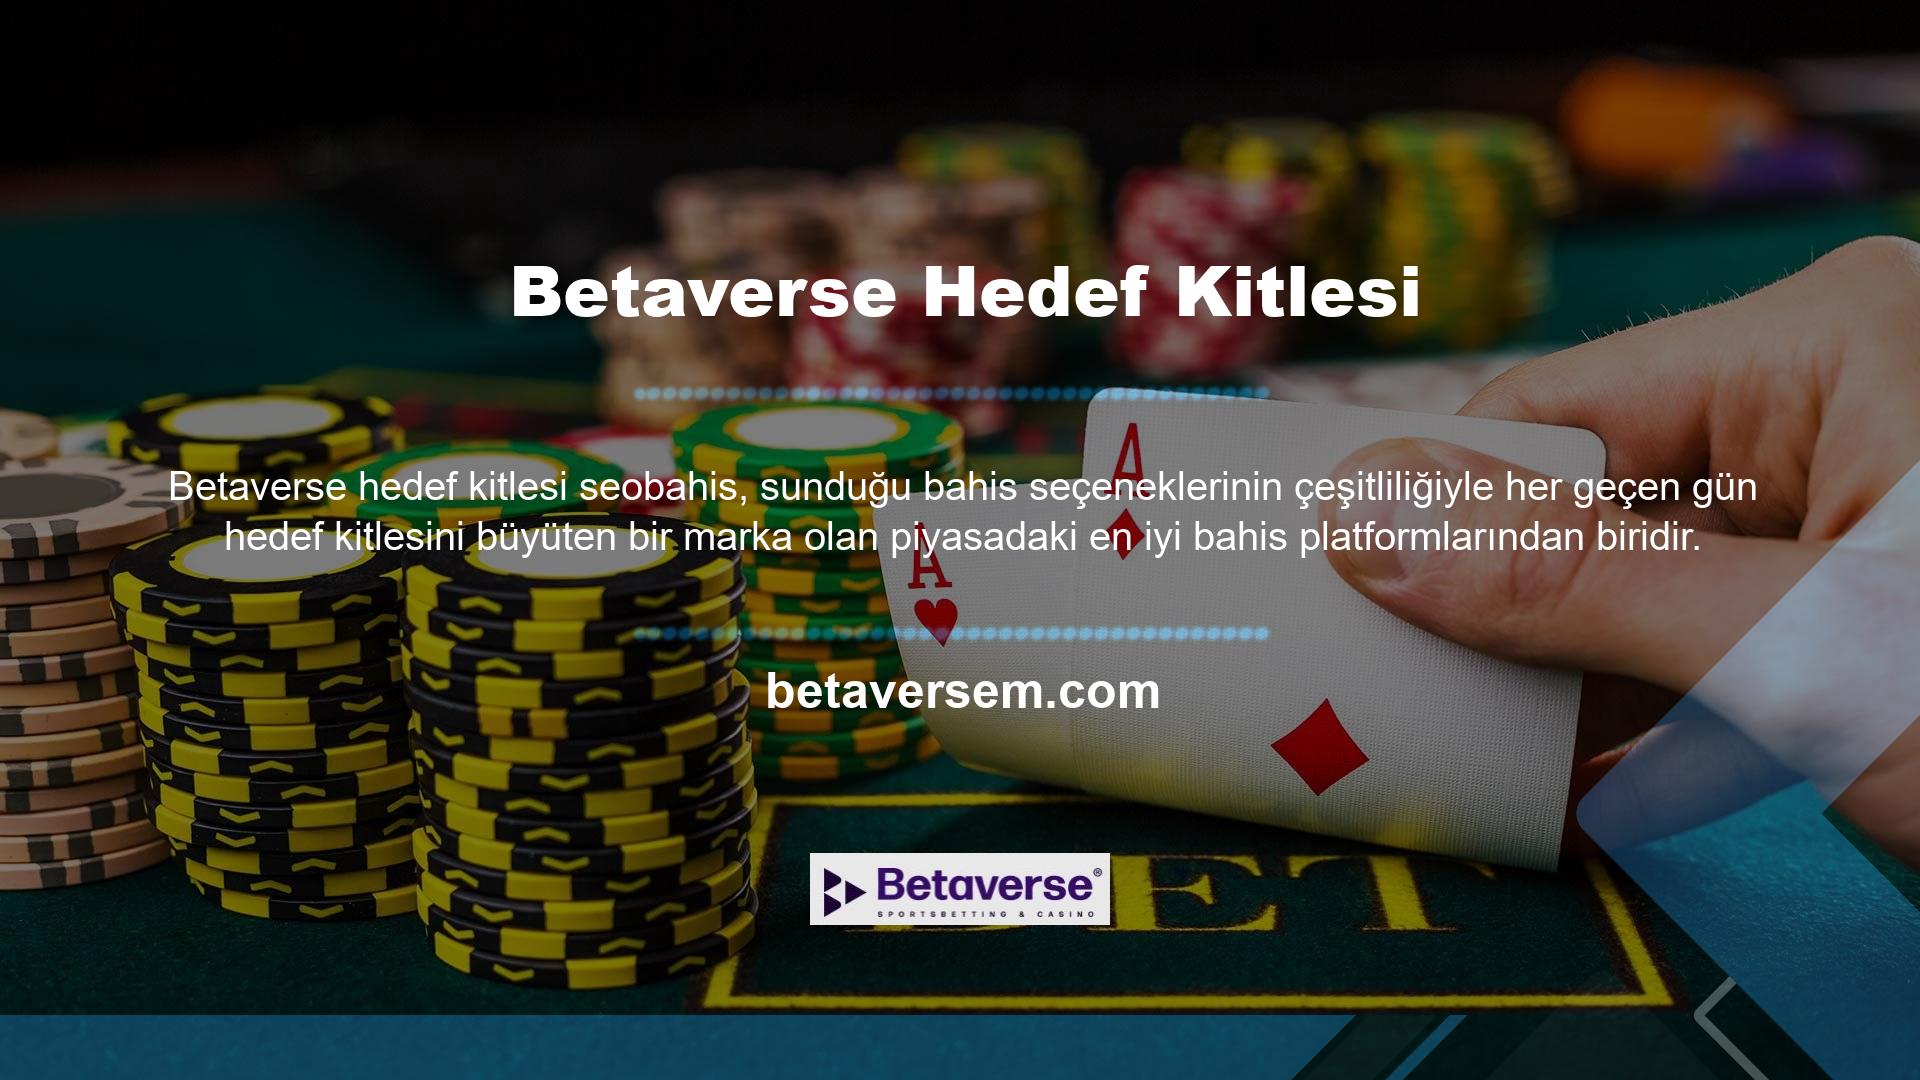 Betaverse, kullanıcılarına tekli oyun seçenekleri de sunuyor